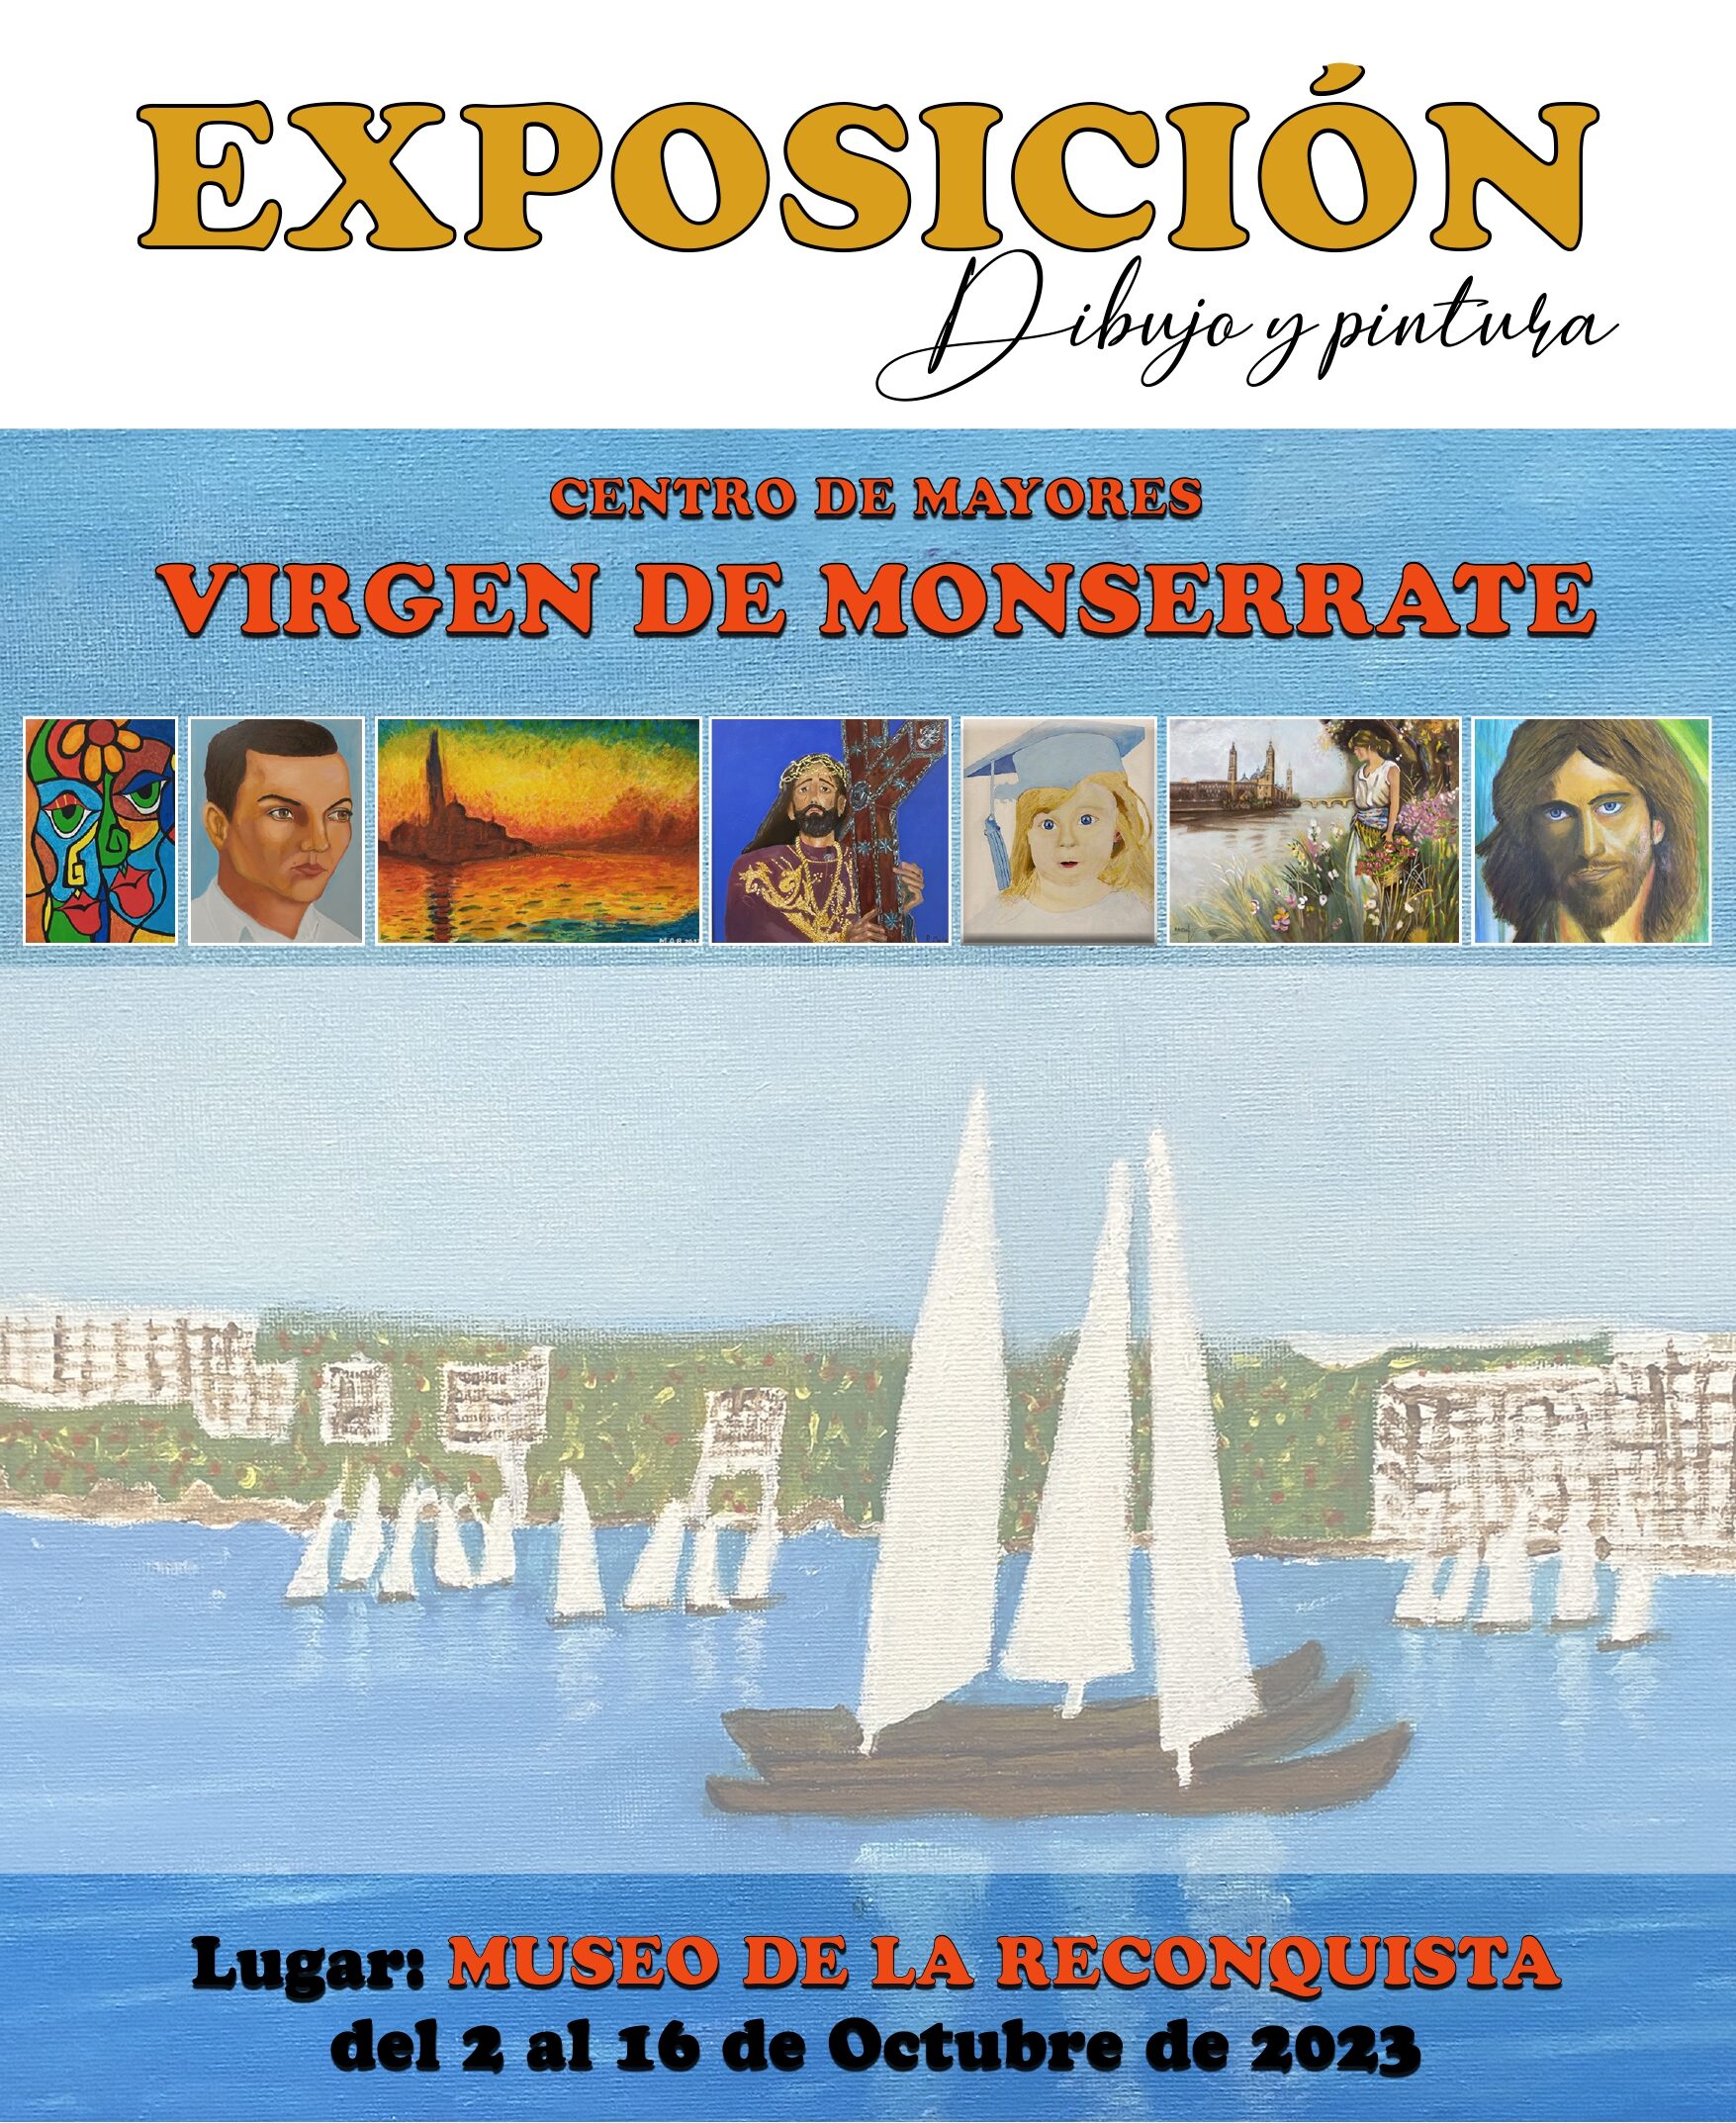 Usuarios del Centro de Mayores 'Virgen de Monserrate' expondrán sus cuadros y dibujos en una muestra artística